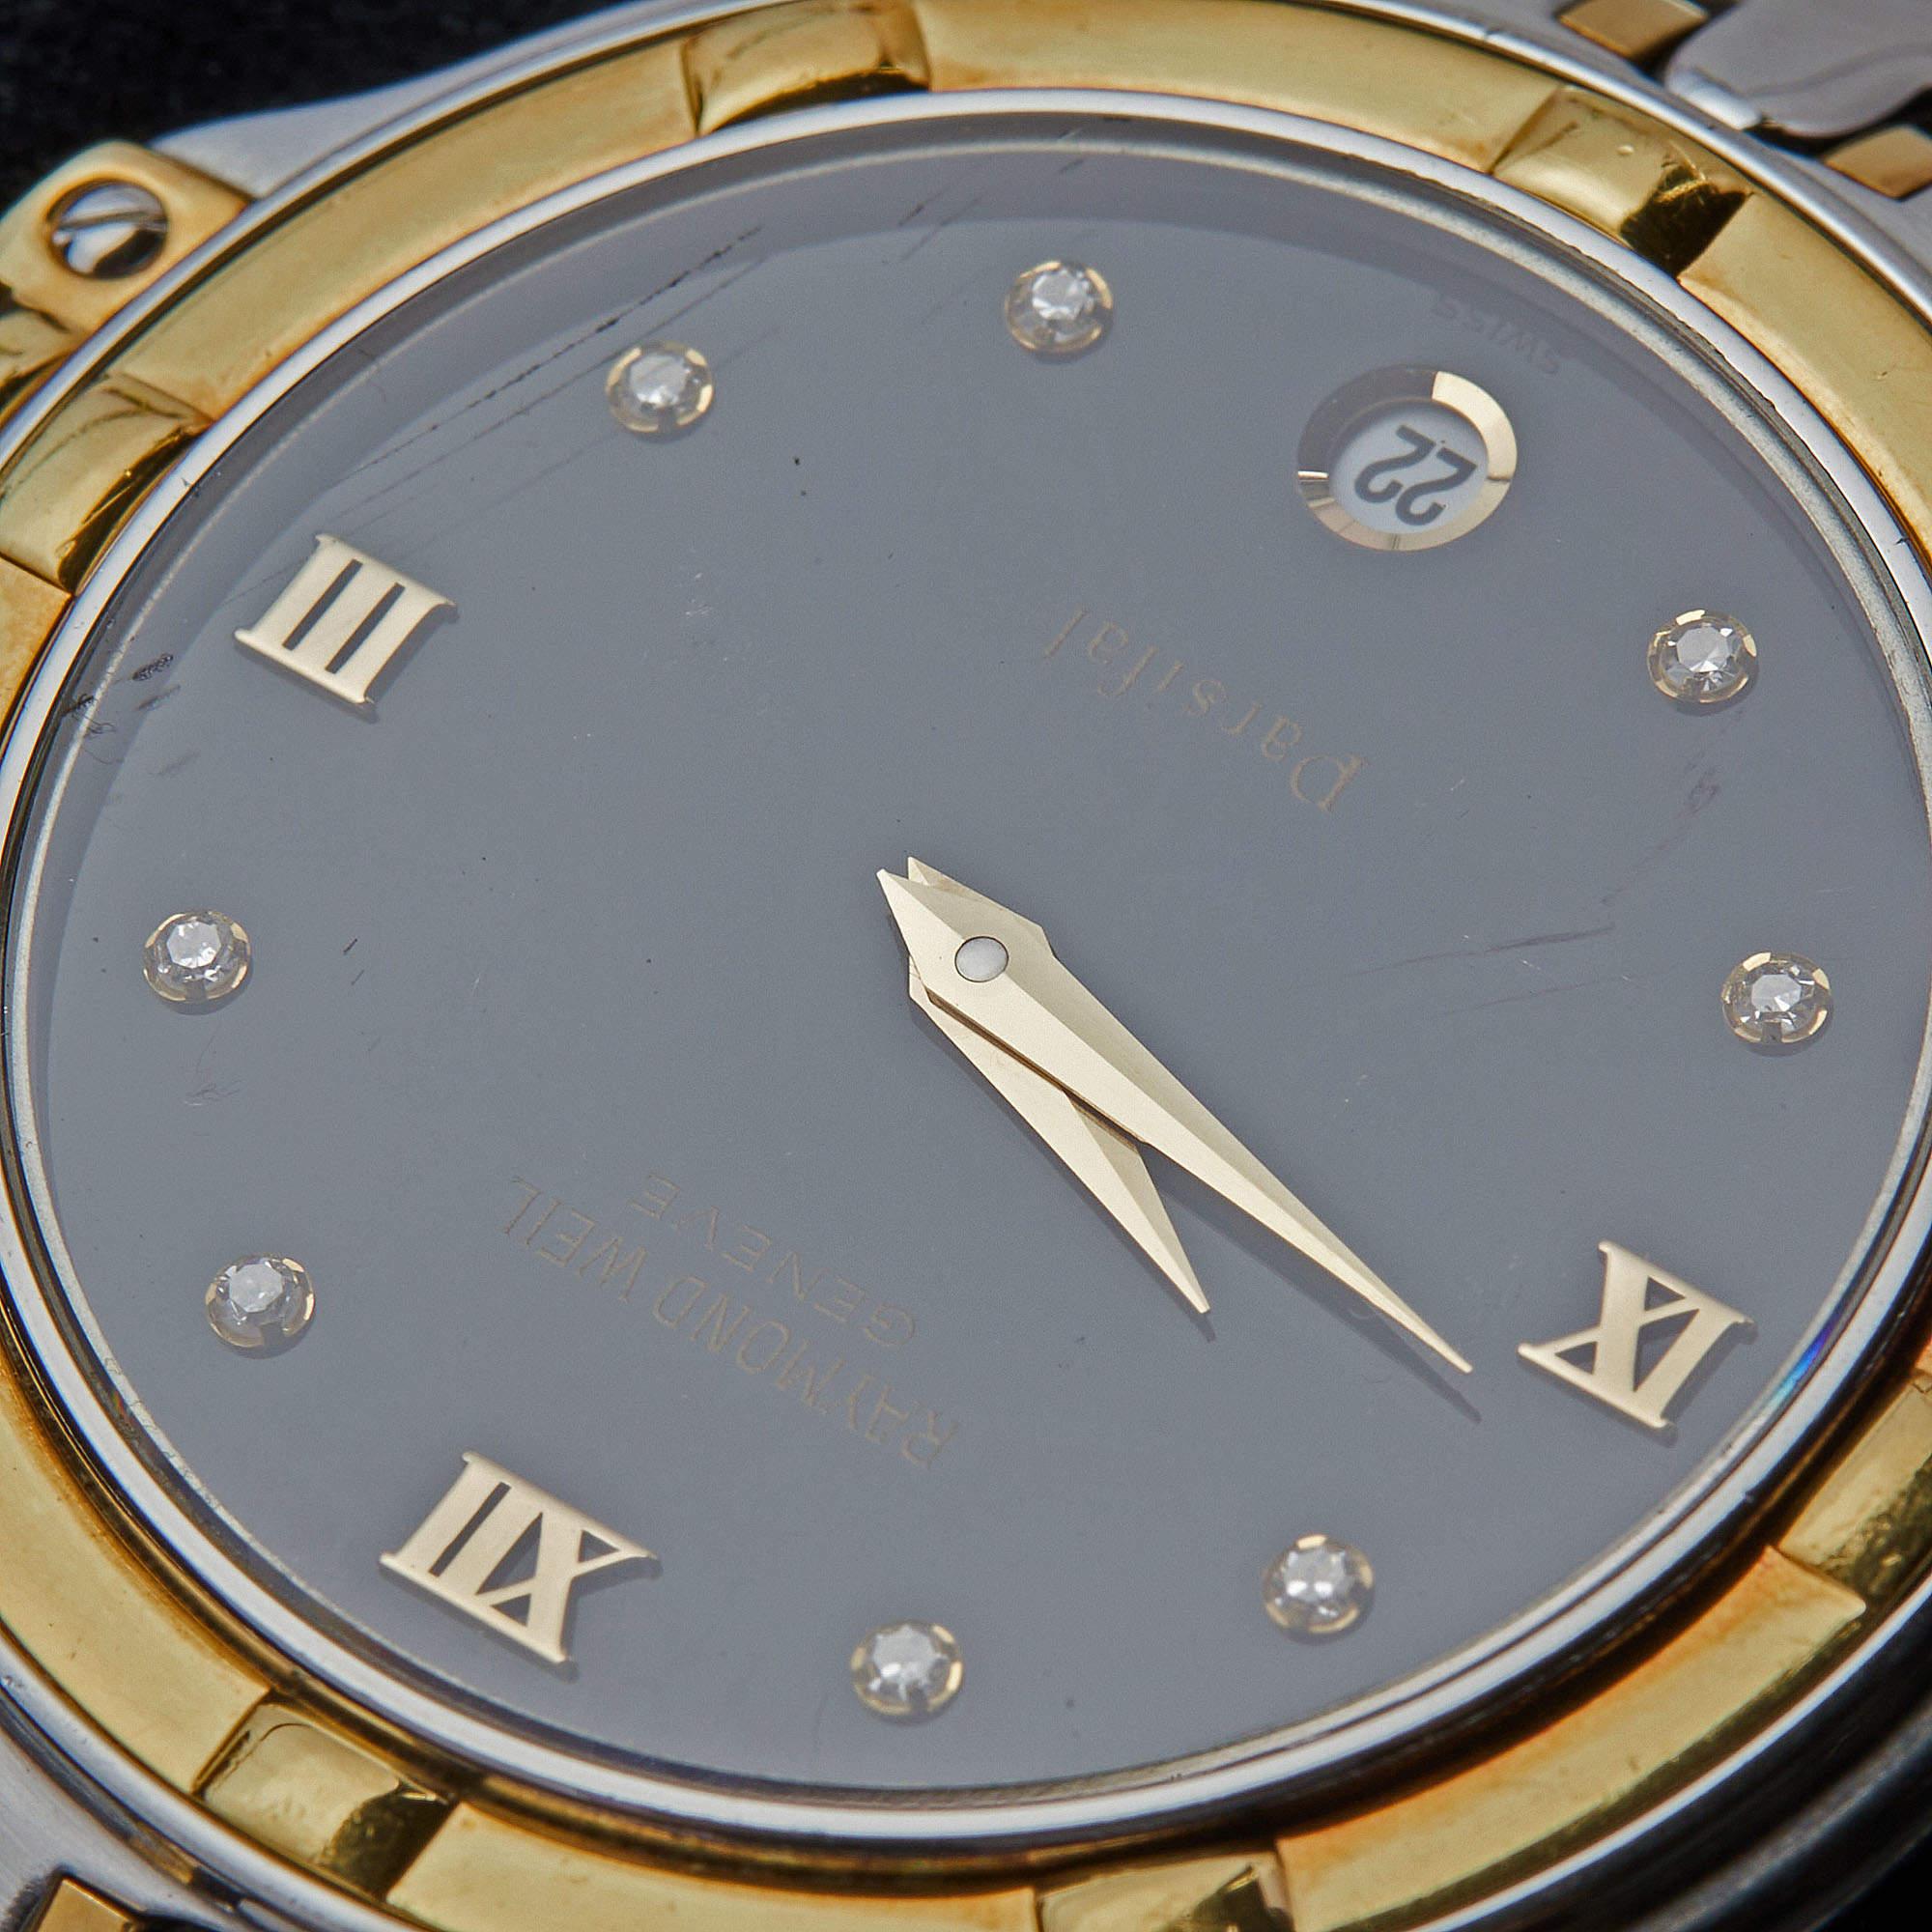 Cette montre Raymond Weil mérite vraiment d'être à vous, car elle est pratique et très attrayante. Il a été fabriqué en acier inoxydable et est rehaussé d'un placage d'or. Elle possède un boîtier rond et un cadran noir avec un mélange de points